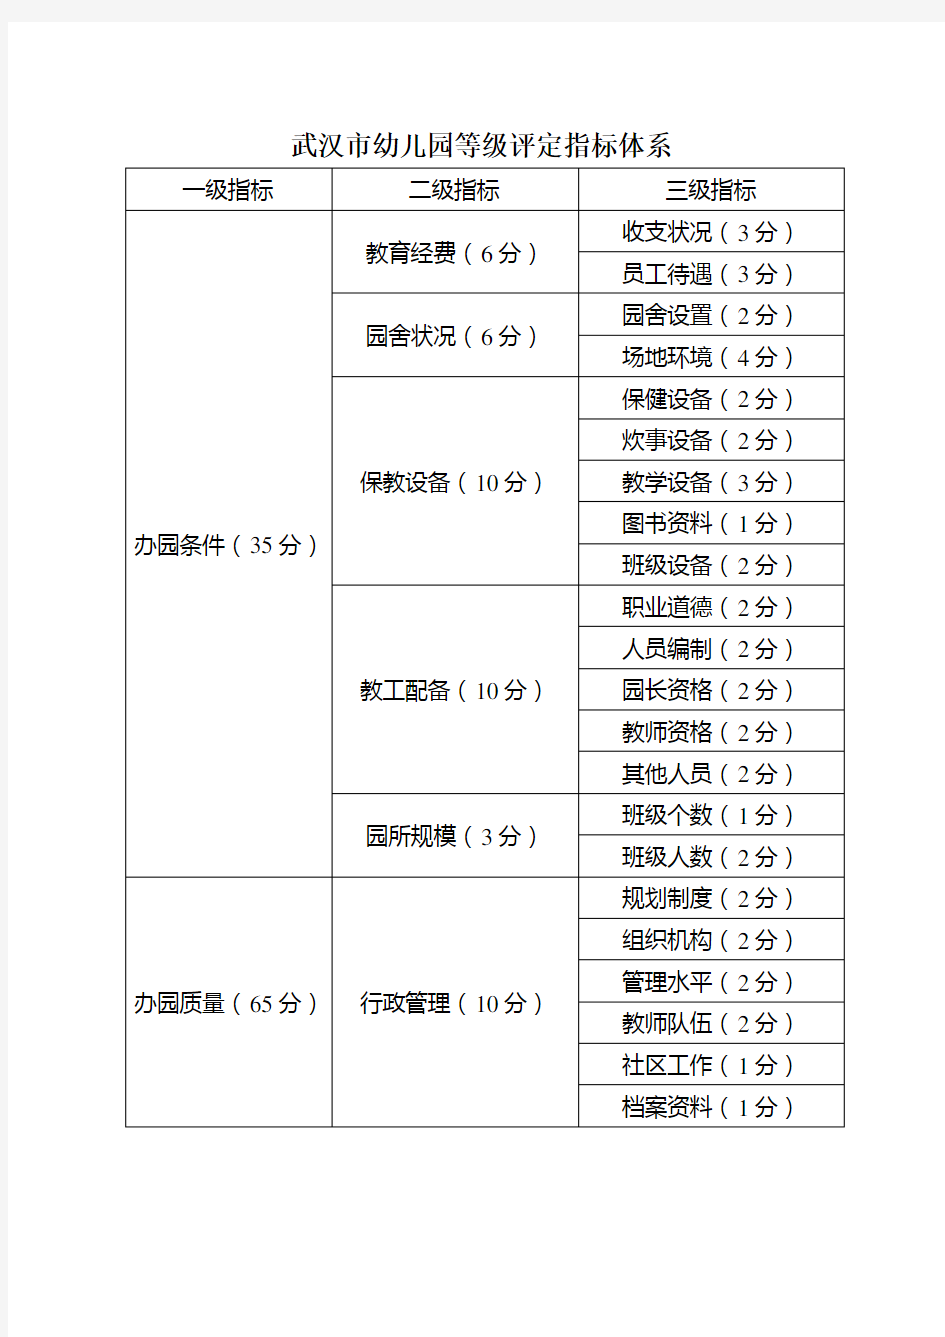 武汉市幼儿园等级评定指标体系